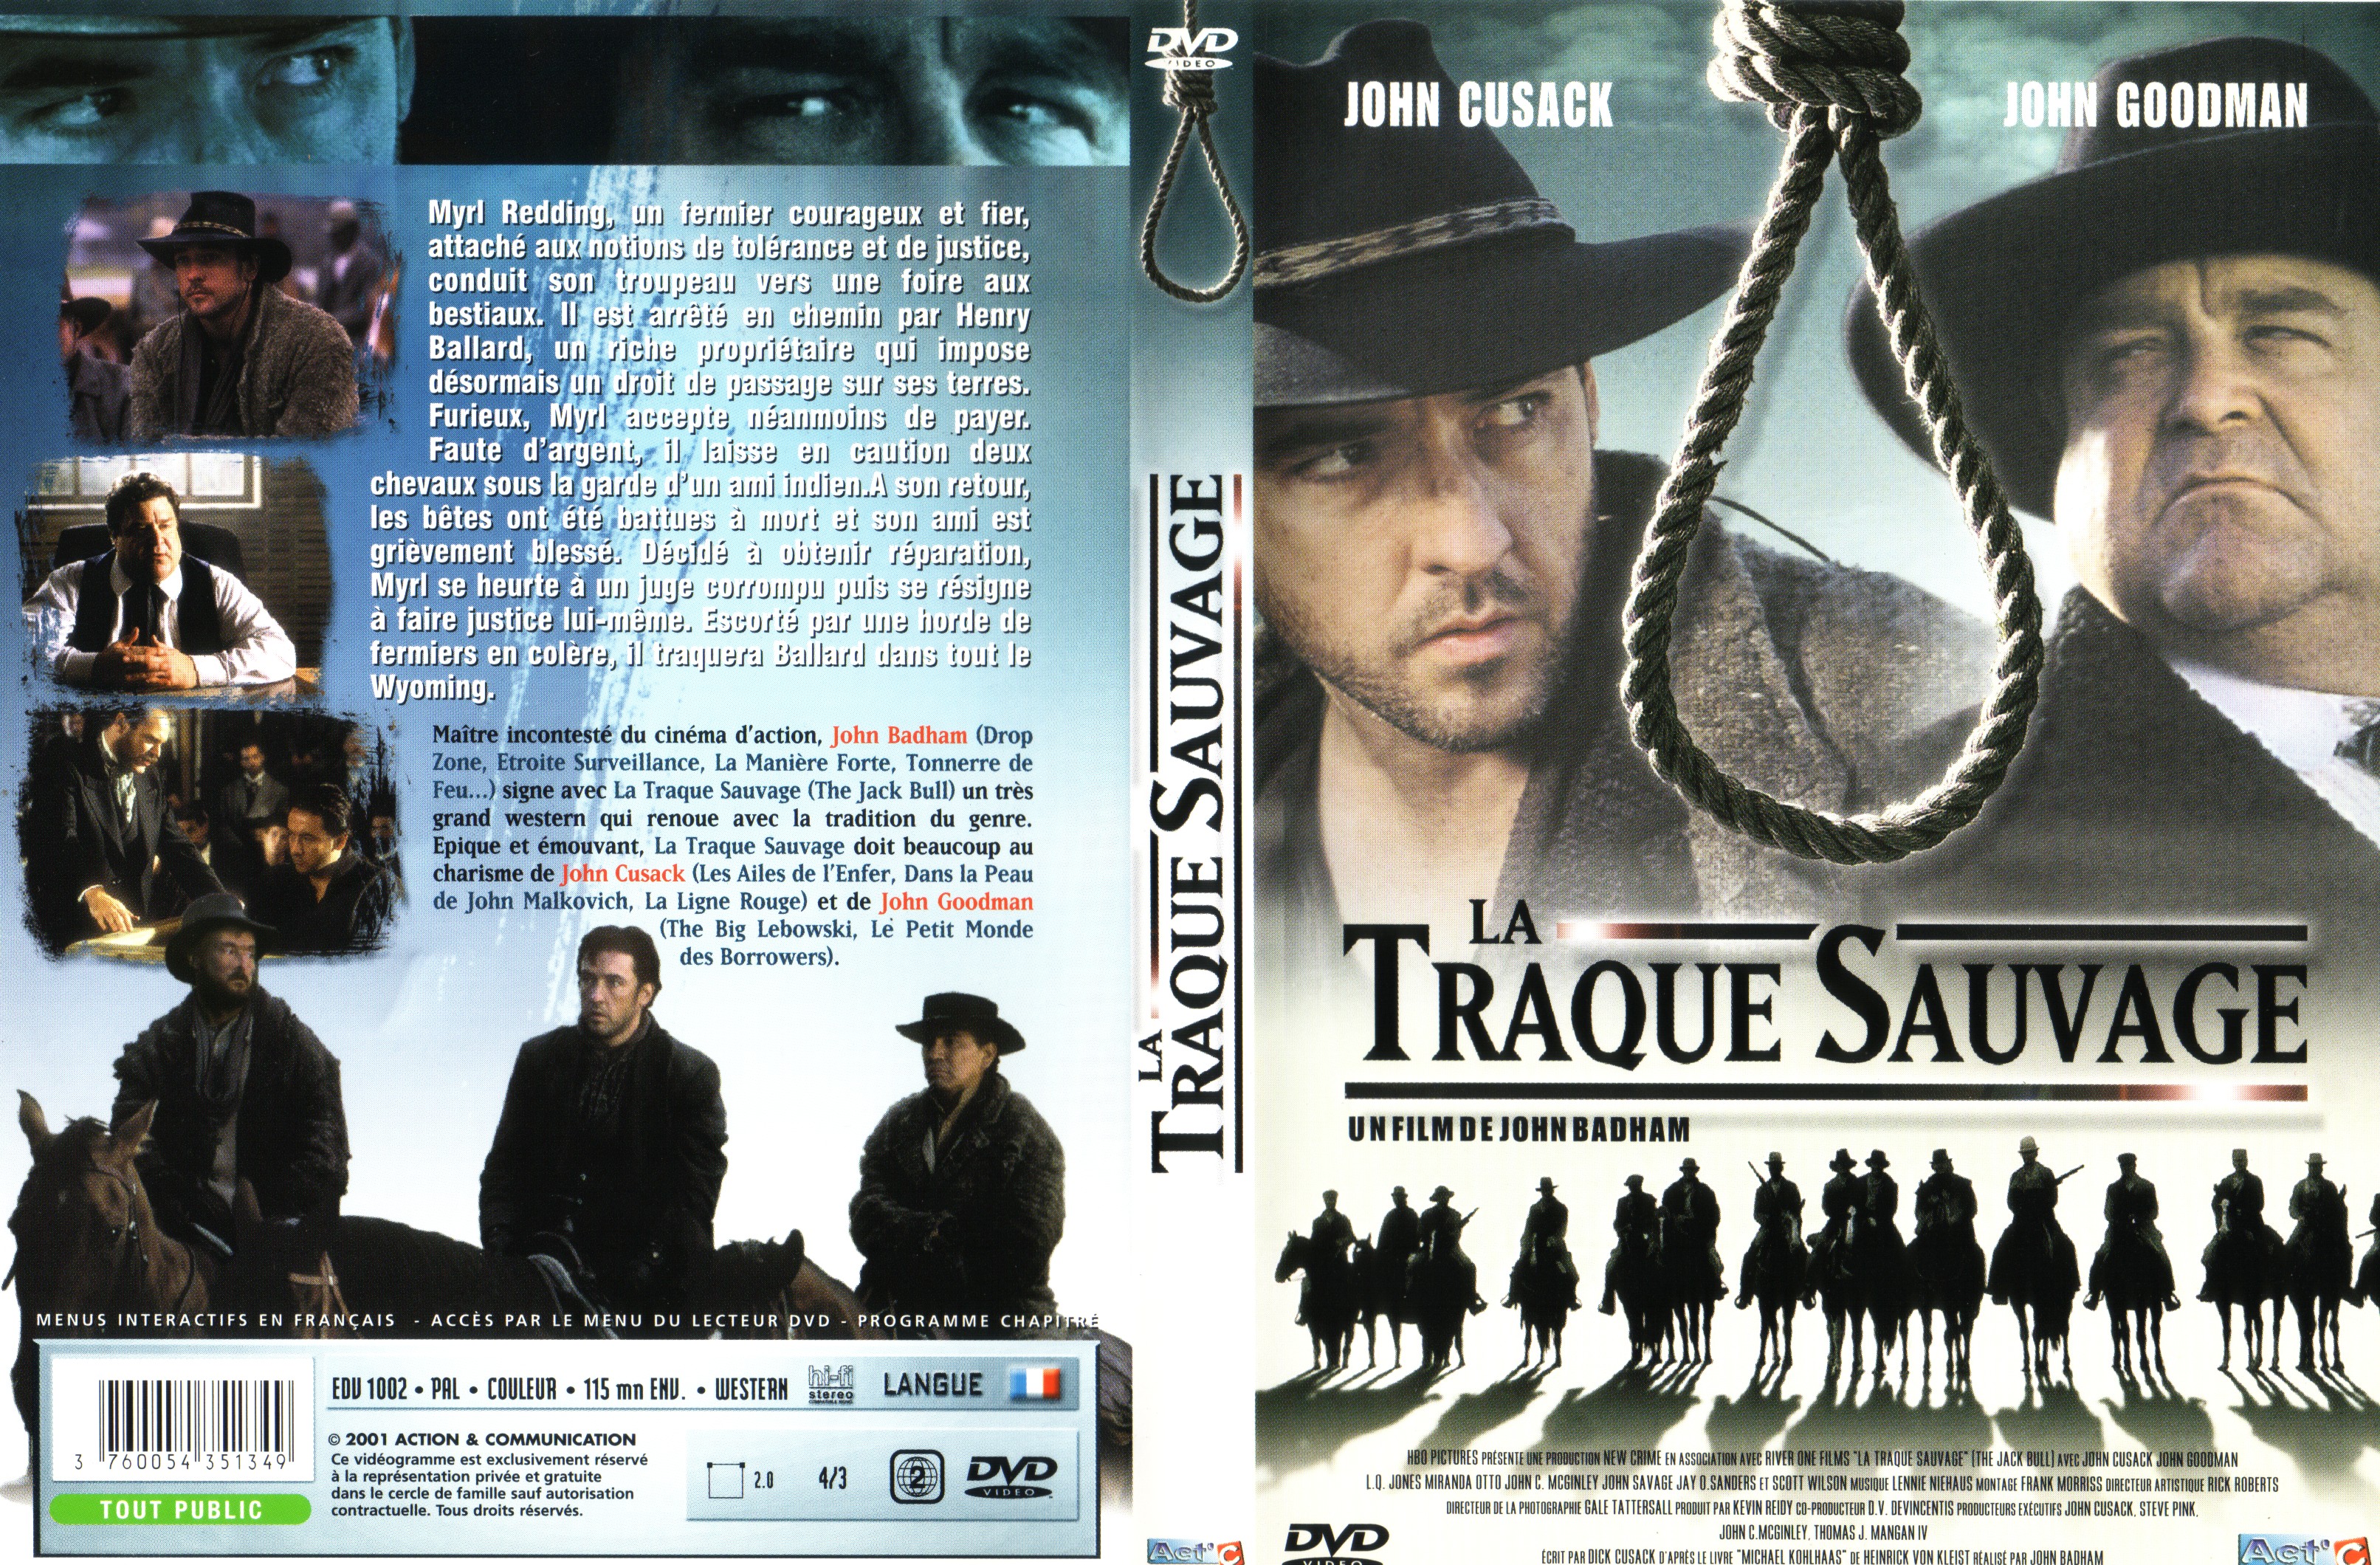 Jaquette DVD La traque sauvage v2